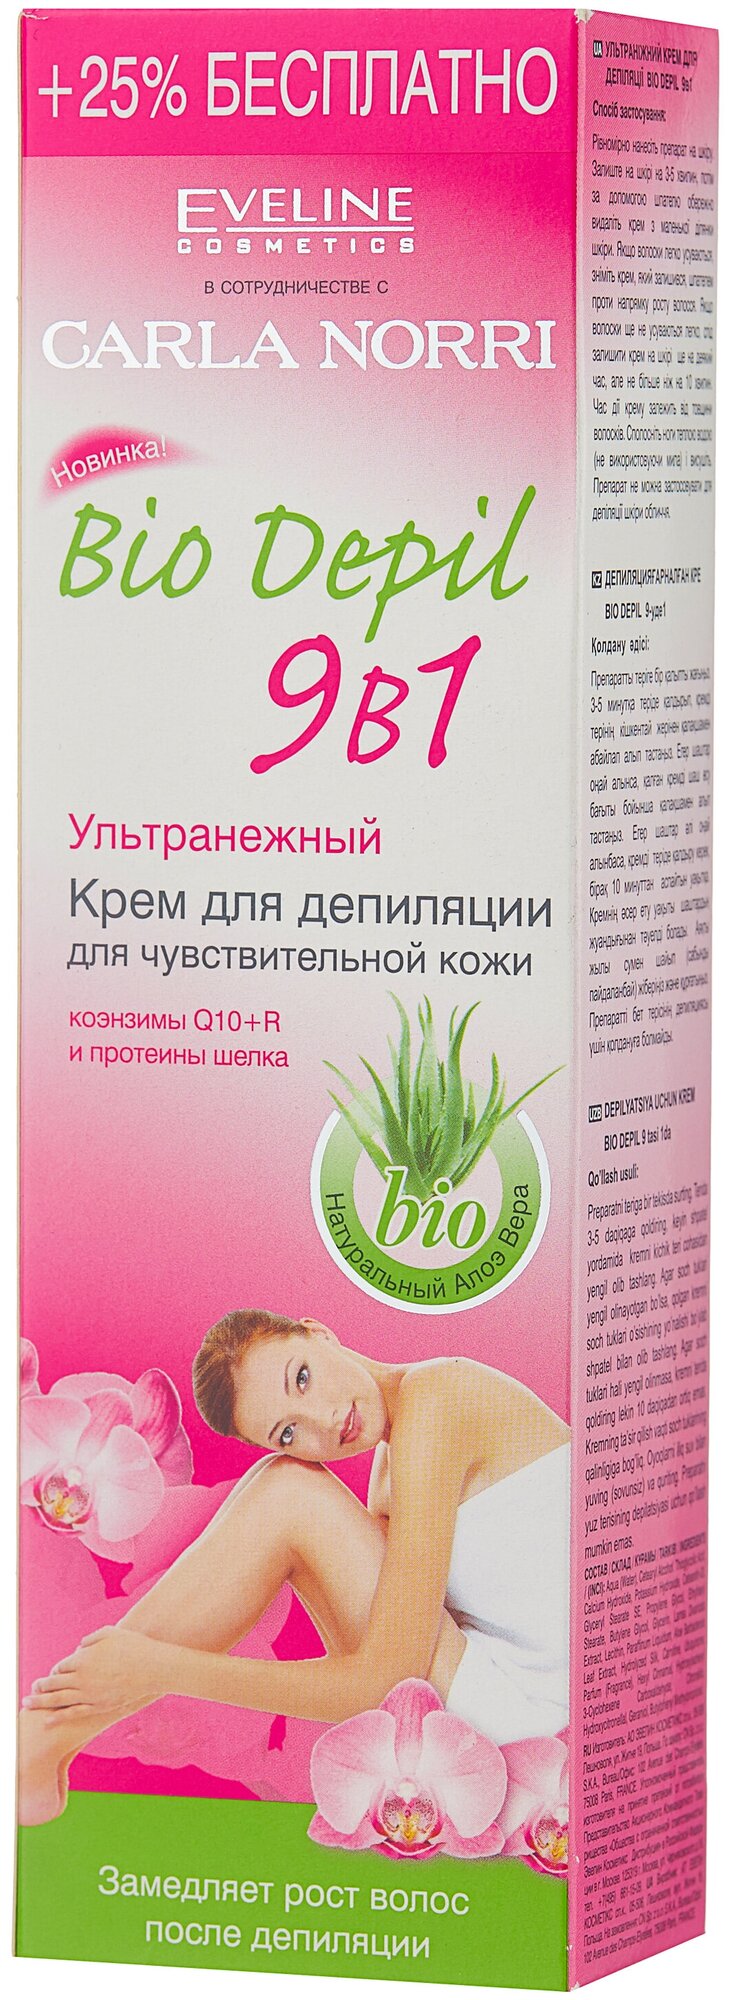 Eveline Cosmetics Bio depil Крем для депиляции 9в1 ультранежный